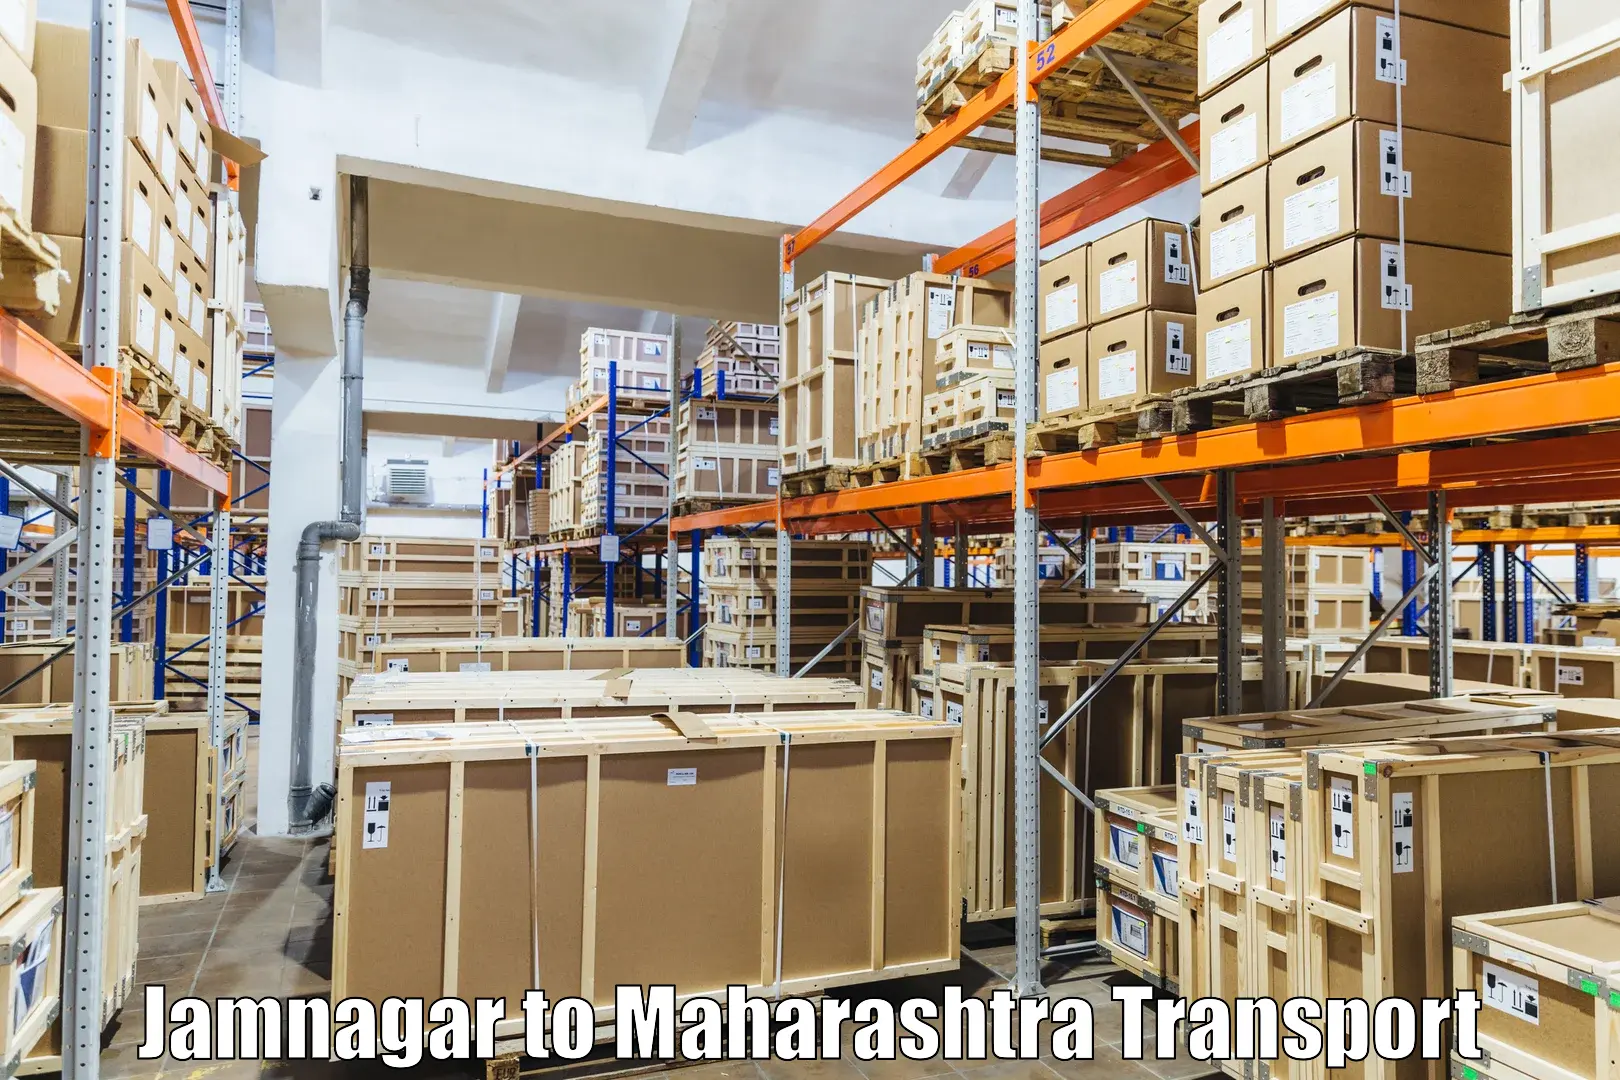 Container transport service Jamnagar to Wani